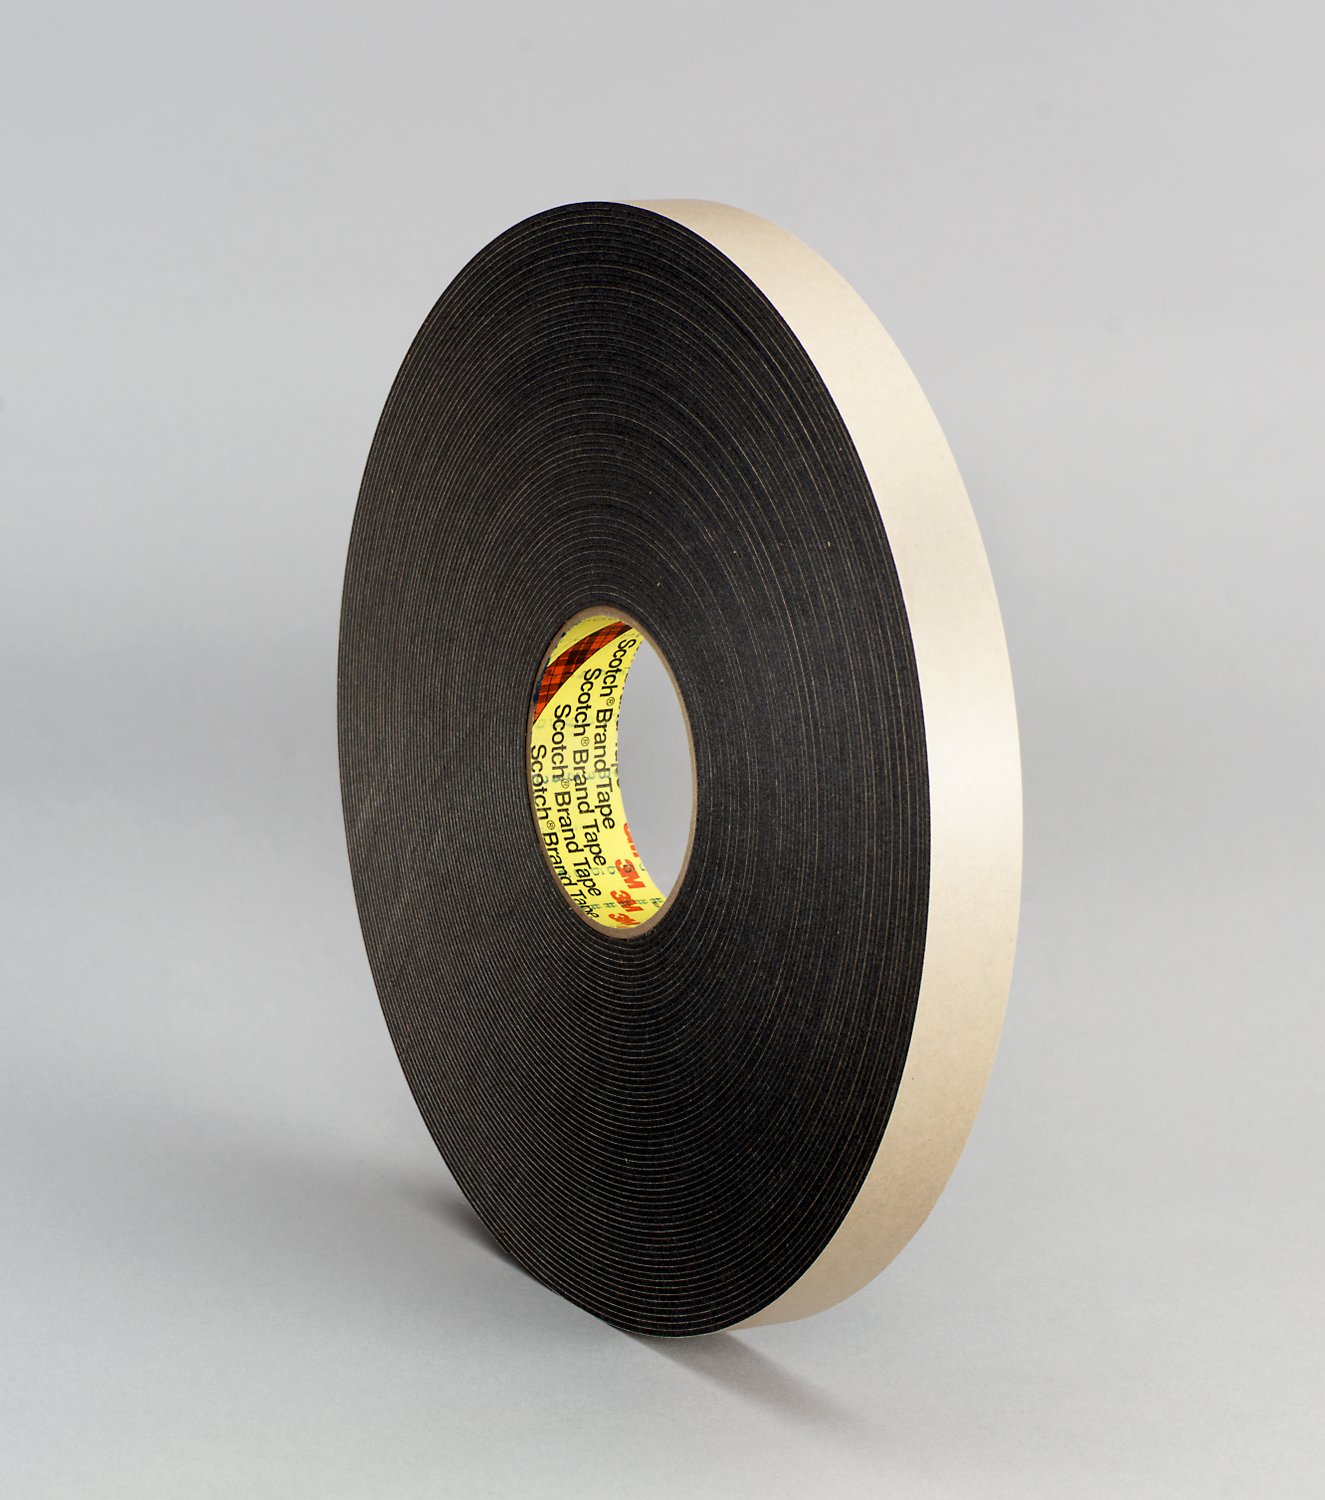 7010334356 - 3M Double Coated Polyethylene Foam Tape 4496B, Black 3/8 in x 36 yd, 62
mil, 24 rolls per case